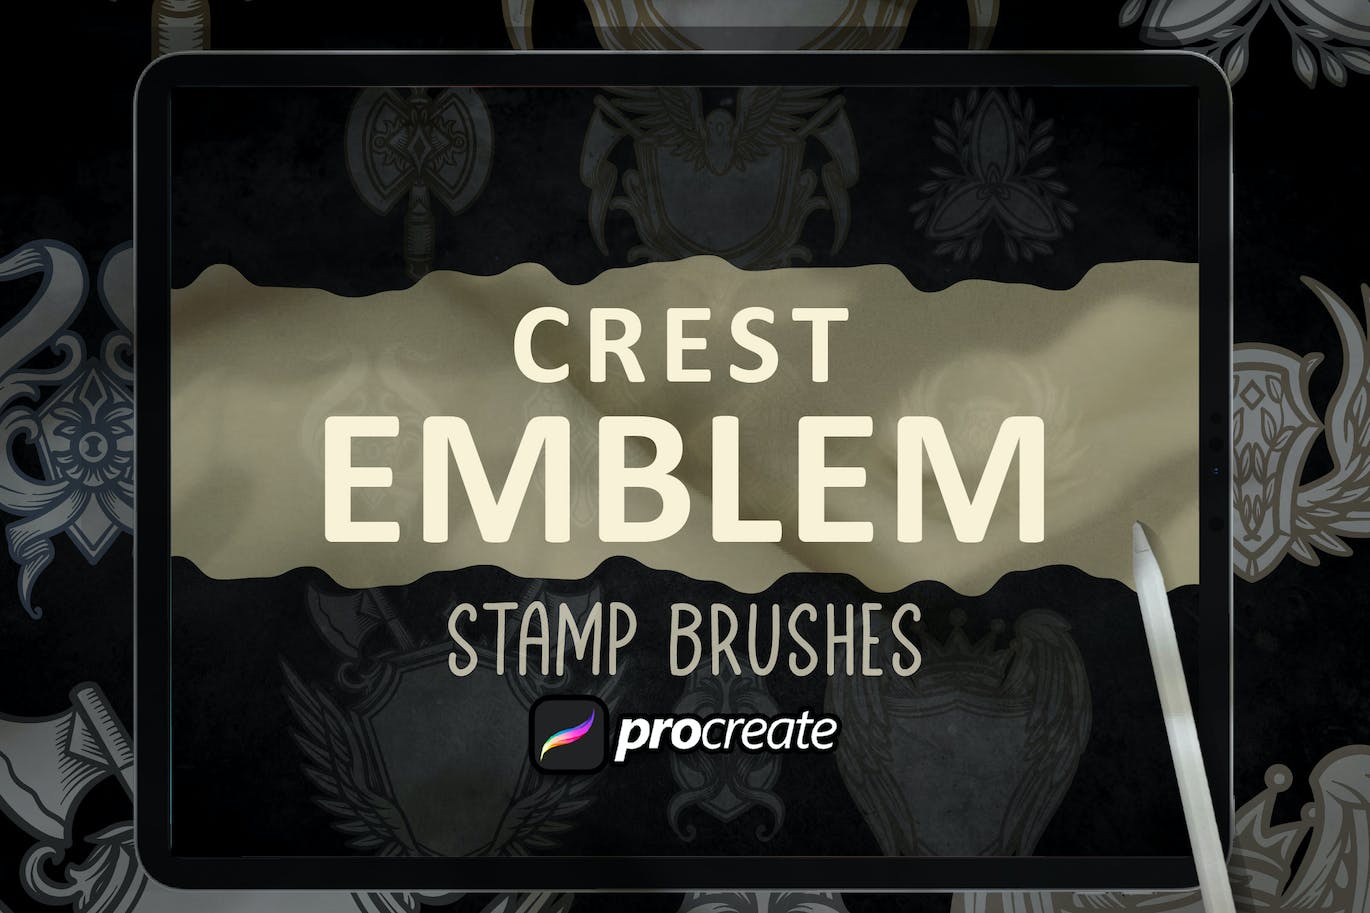 盾牌徽章Procreate印章绘画笔刷素材 Crest Emblem Dansdesign Stamp Brush Procreate 笔刷资源 第2张